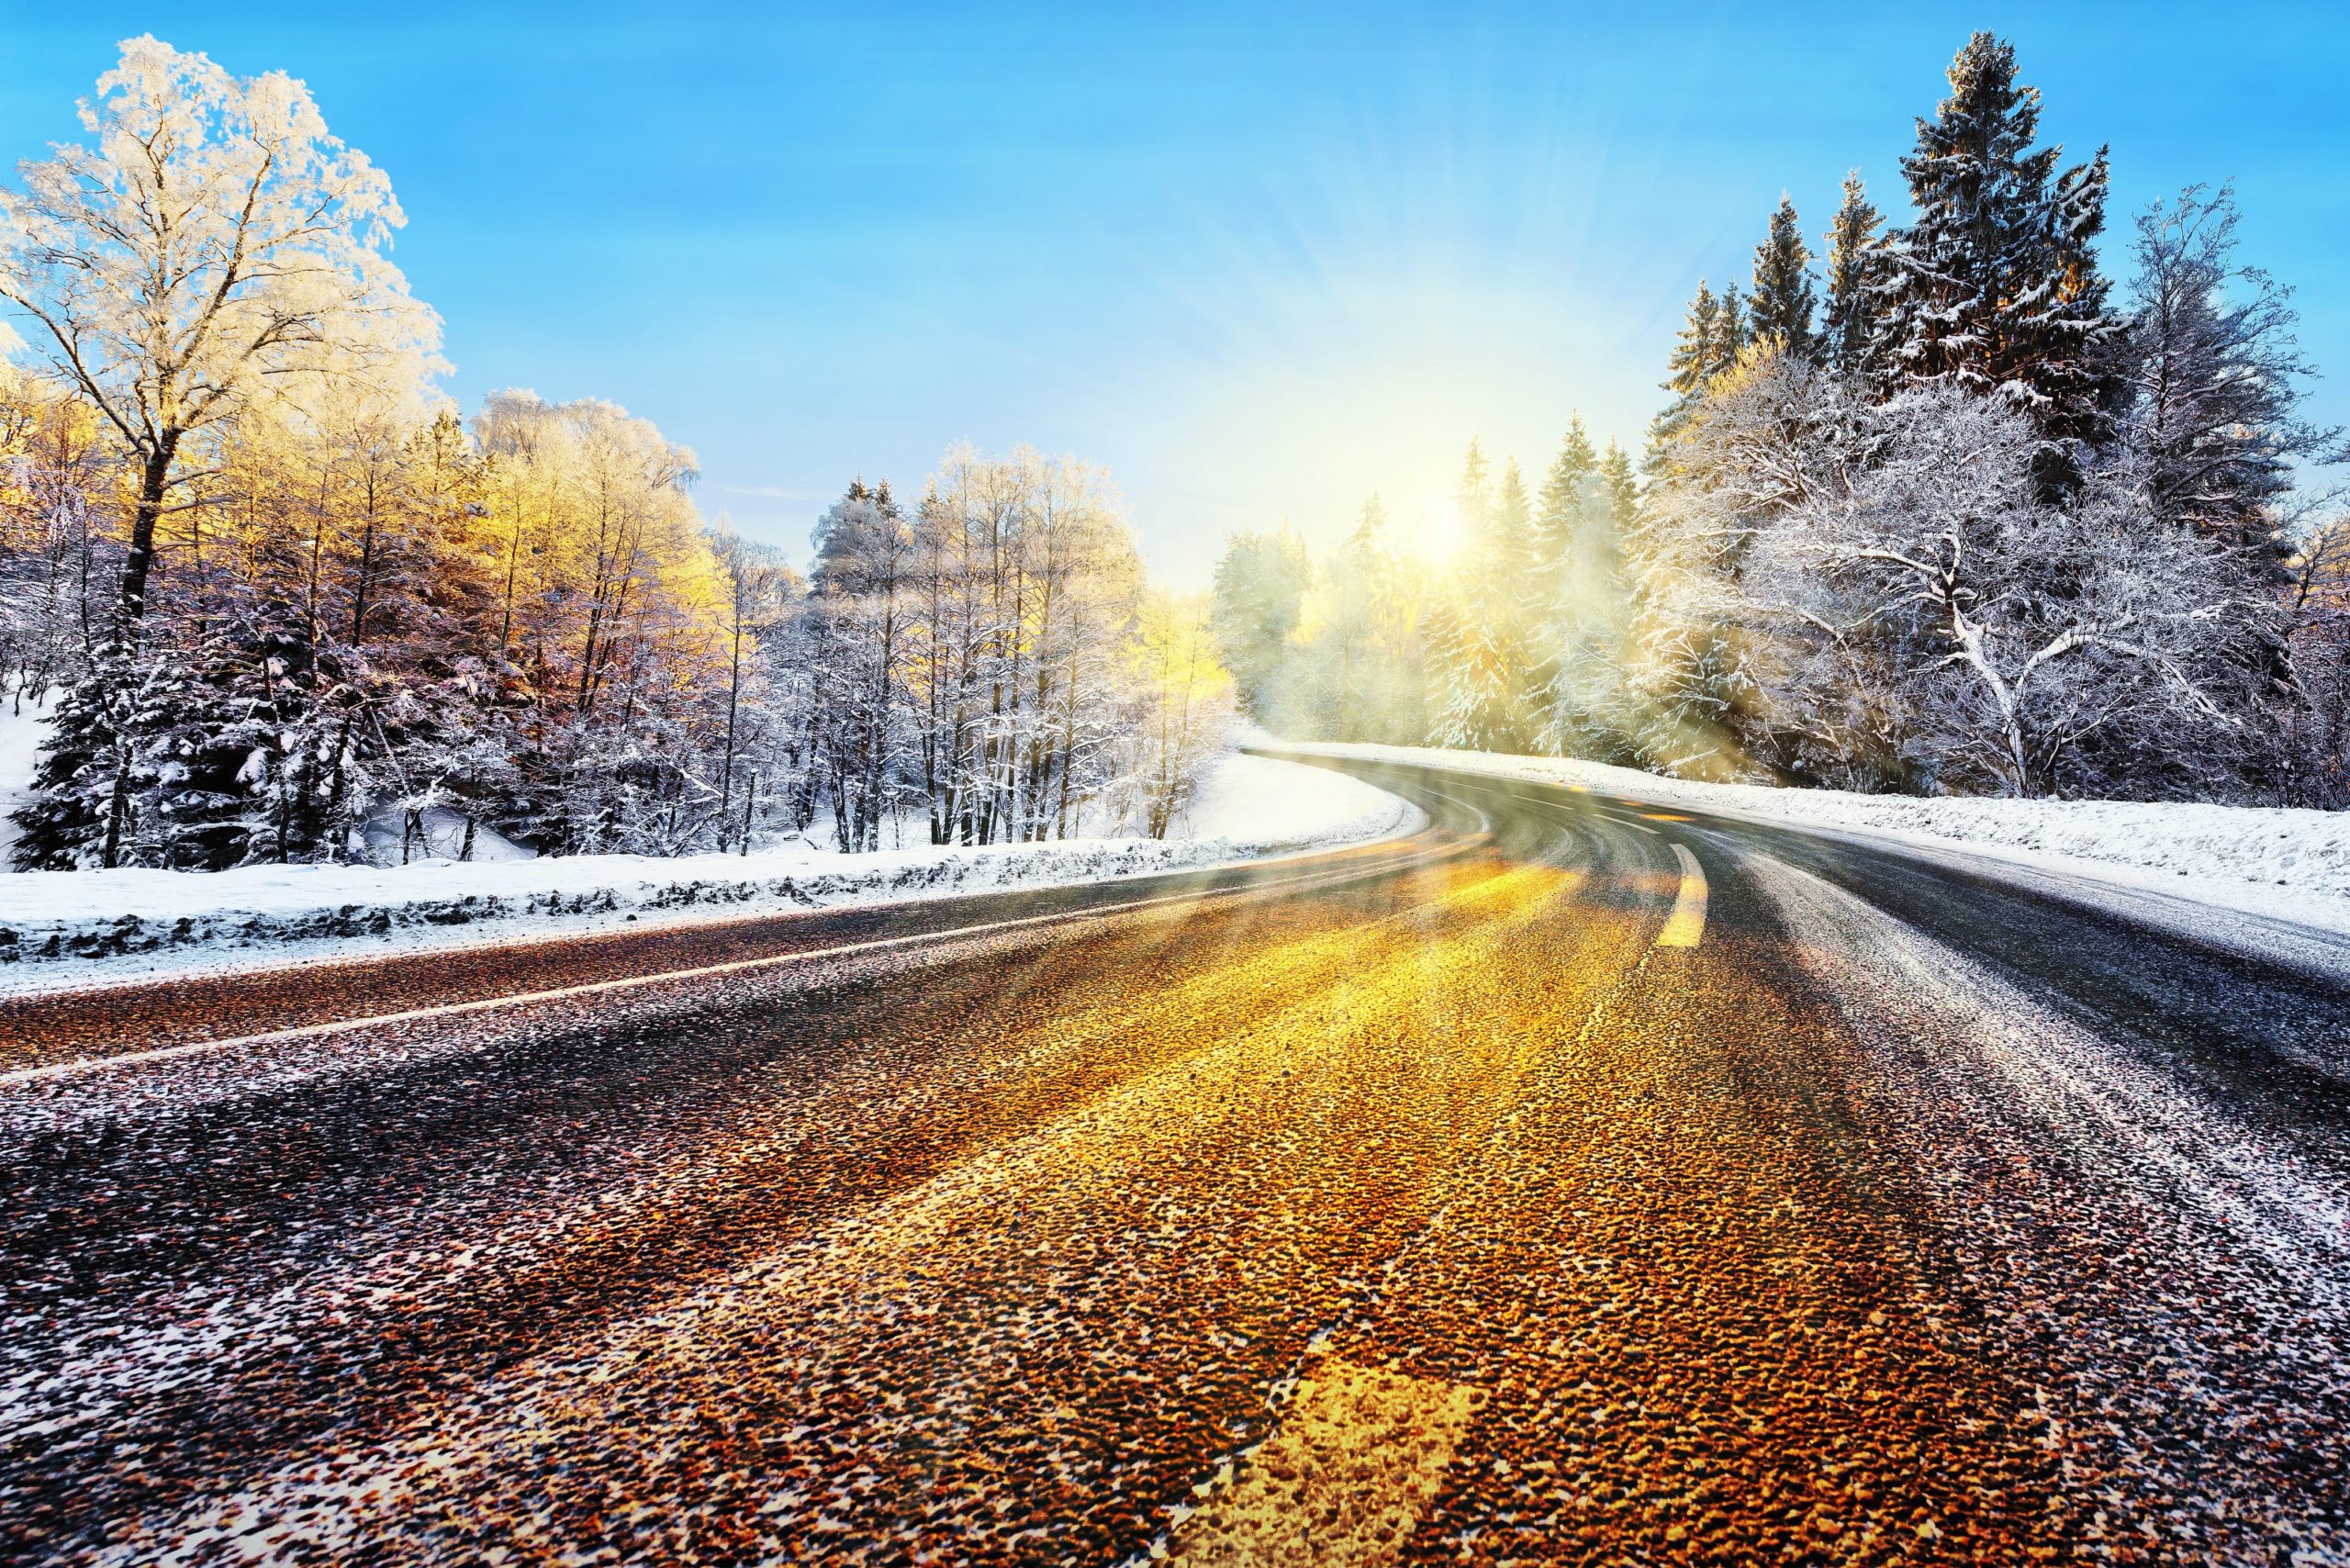 Blurred highway through winter wonderland